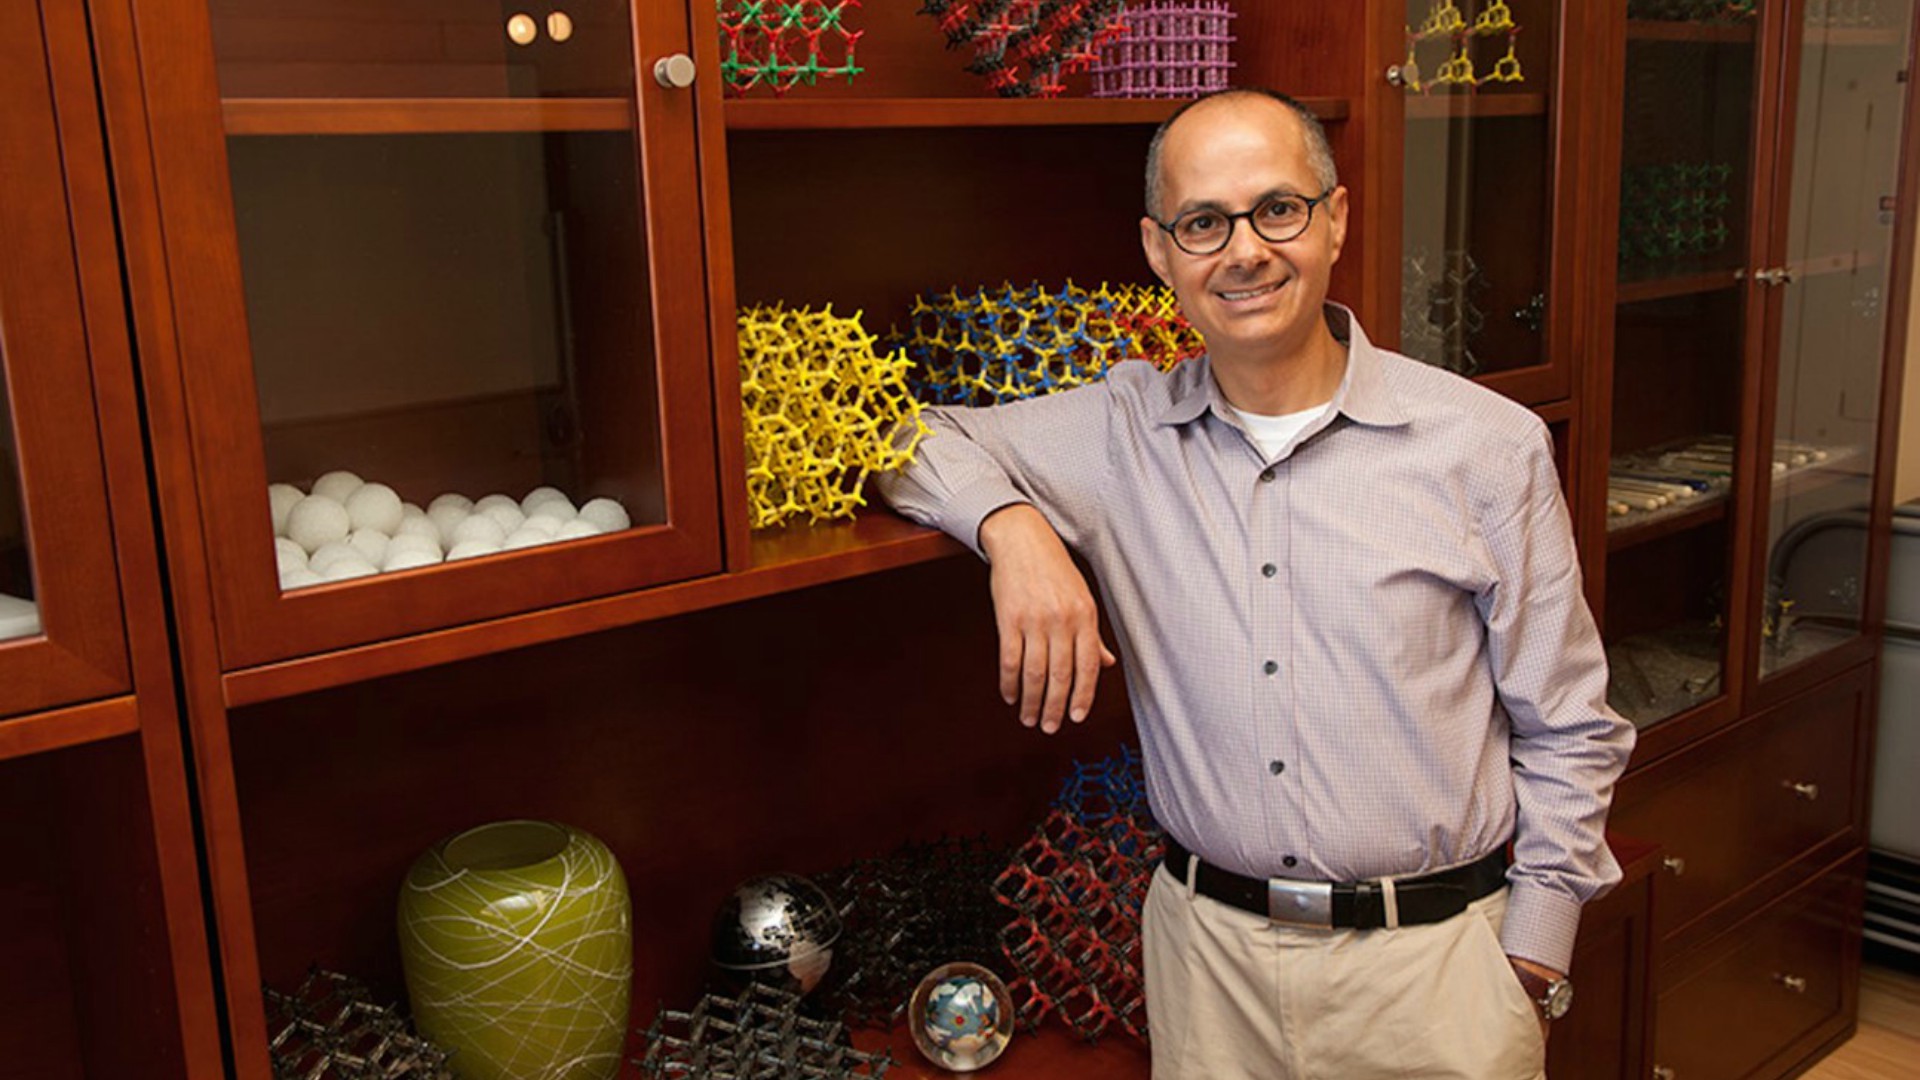 La Fundación BBVA premia a Omar Yaghi por sus hallazgos en la síntesis de elementos químicos